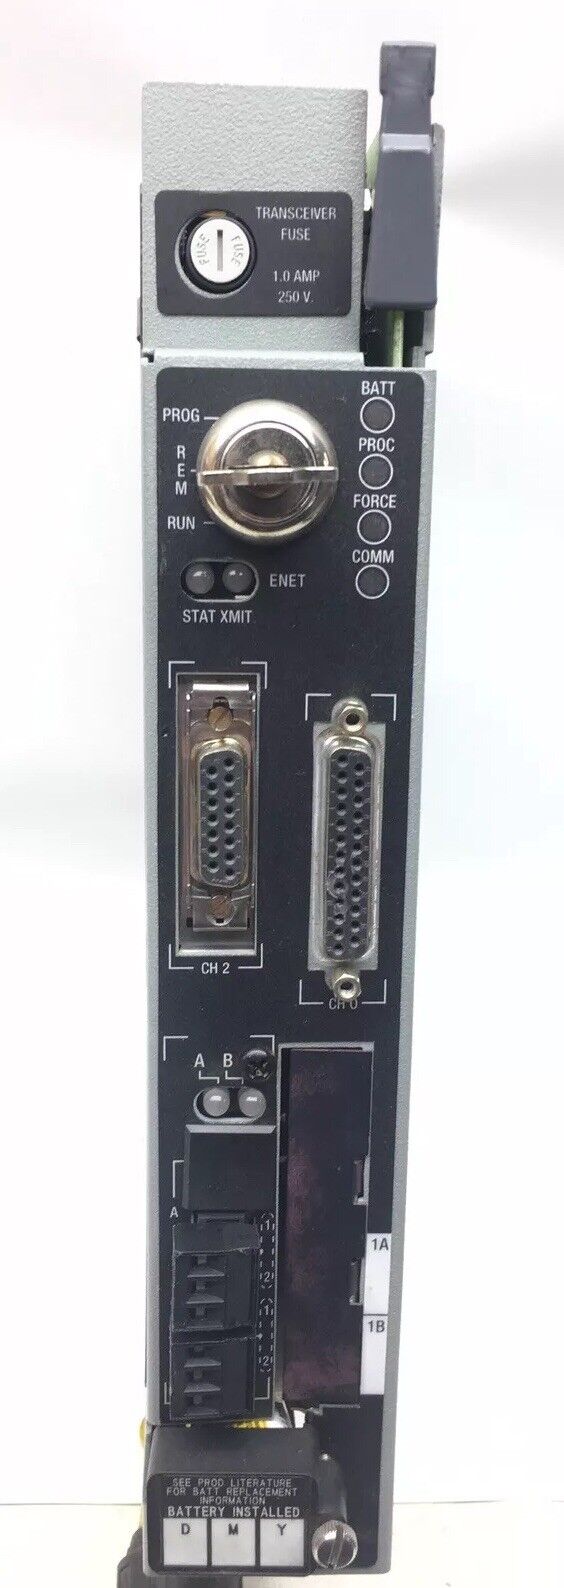 ALLEN-BRADLEY 1785-L80E/E 1785L80E PLC CPU Series E REV F01 F/W B.1 Ethernet